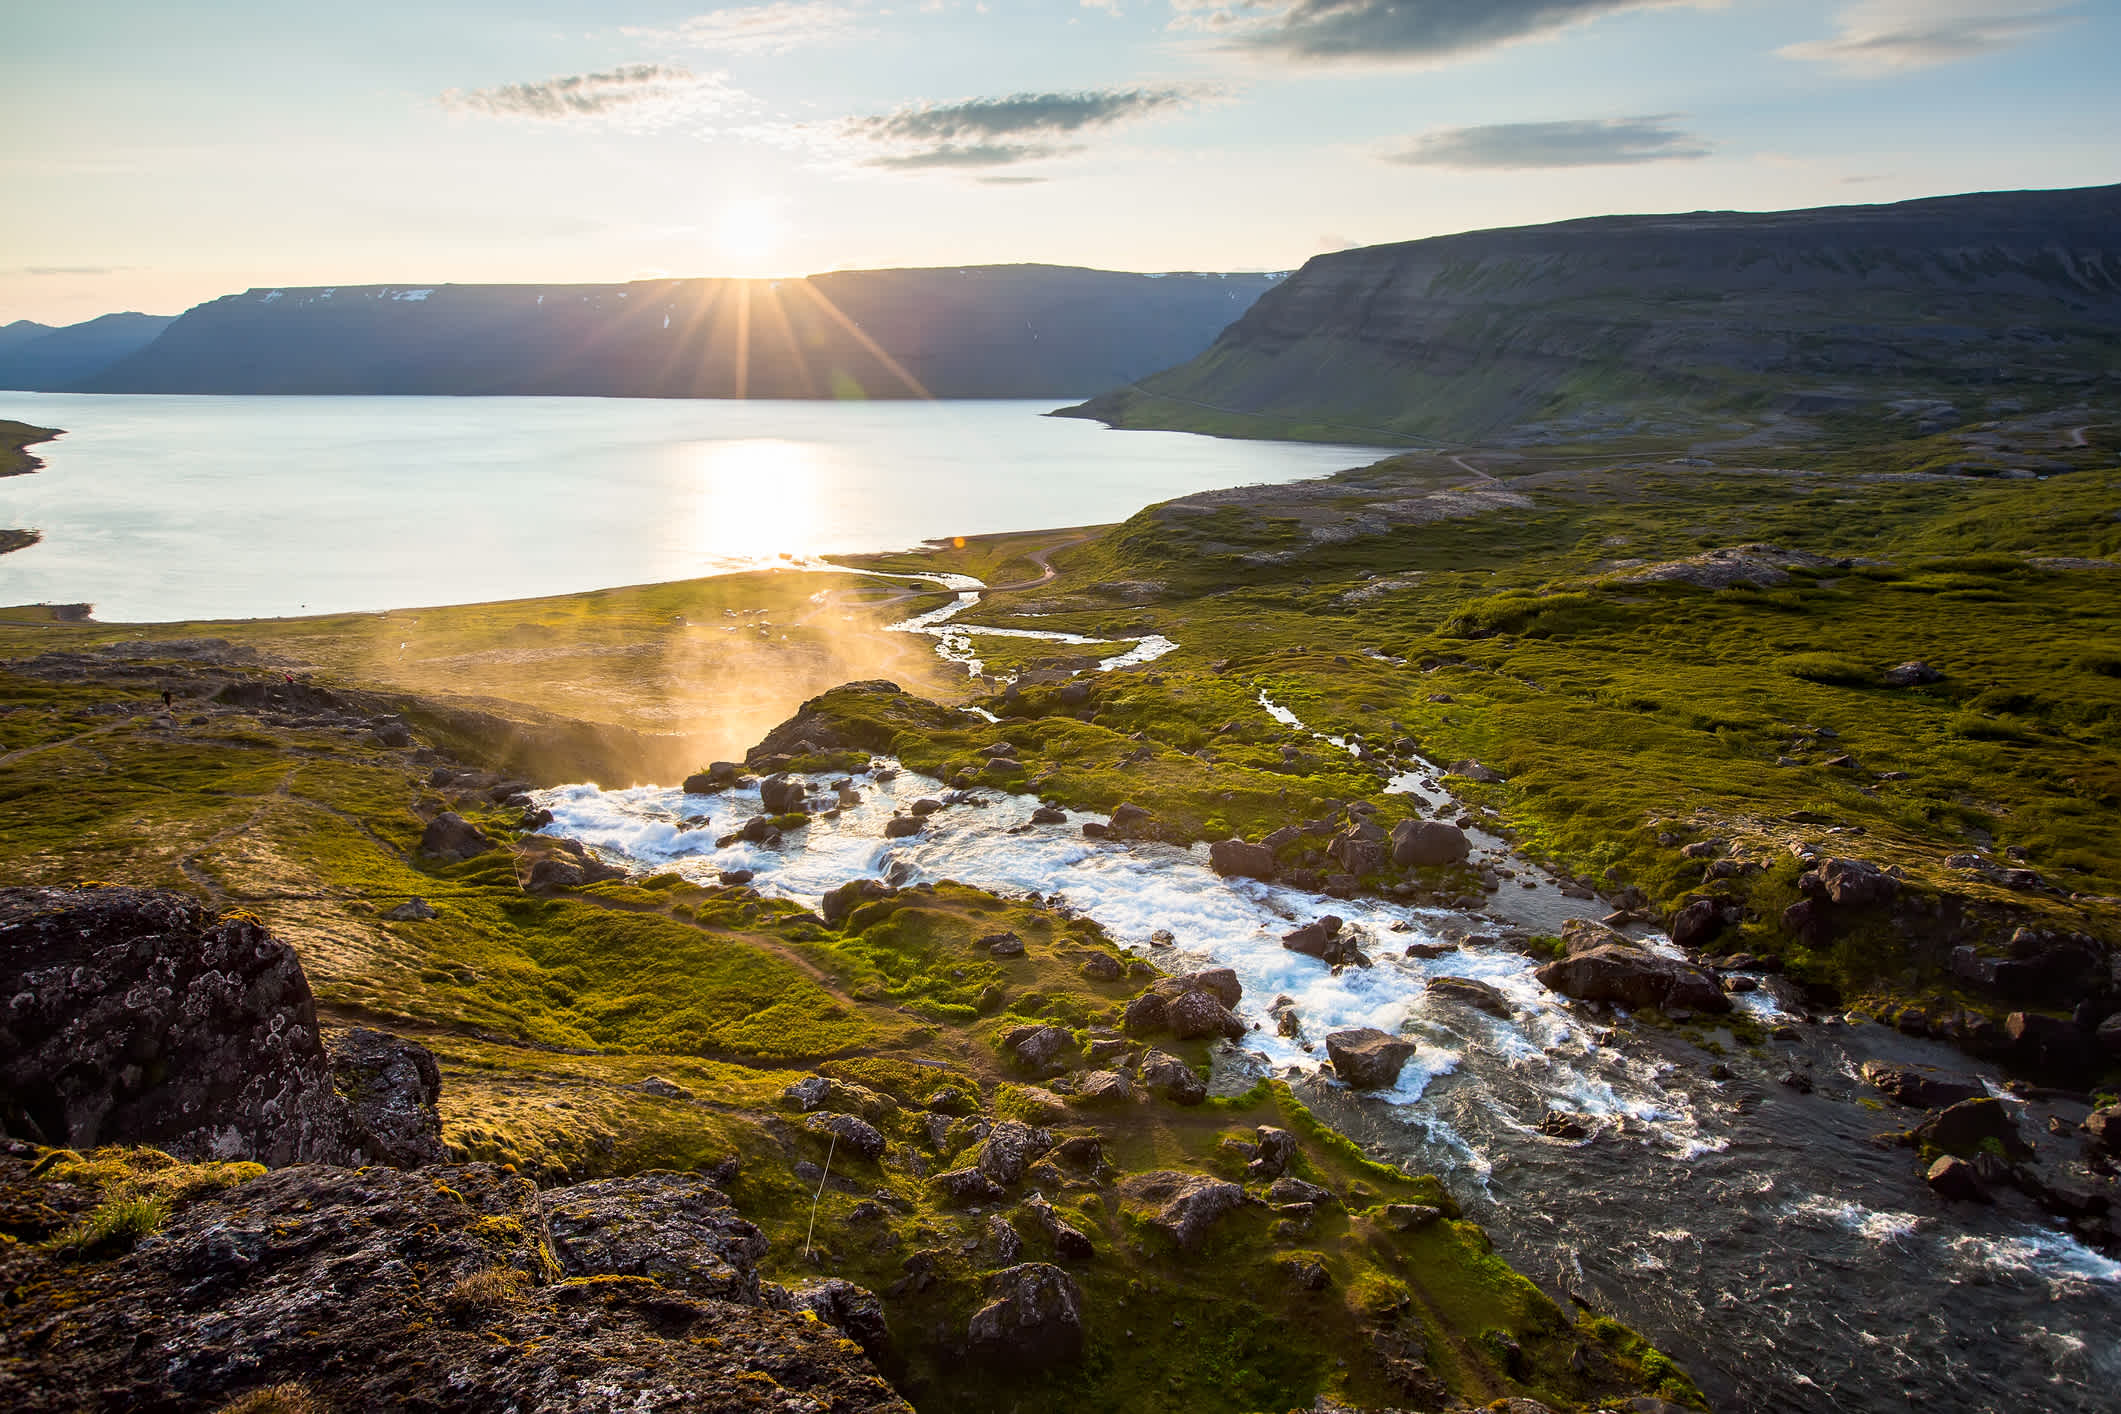 Vue sur le paysage au bord de la mer avec la chute d'eau de Dynjandi, Fjords de l'Ouest, Islande.